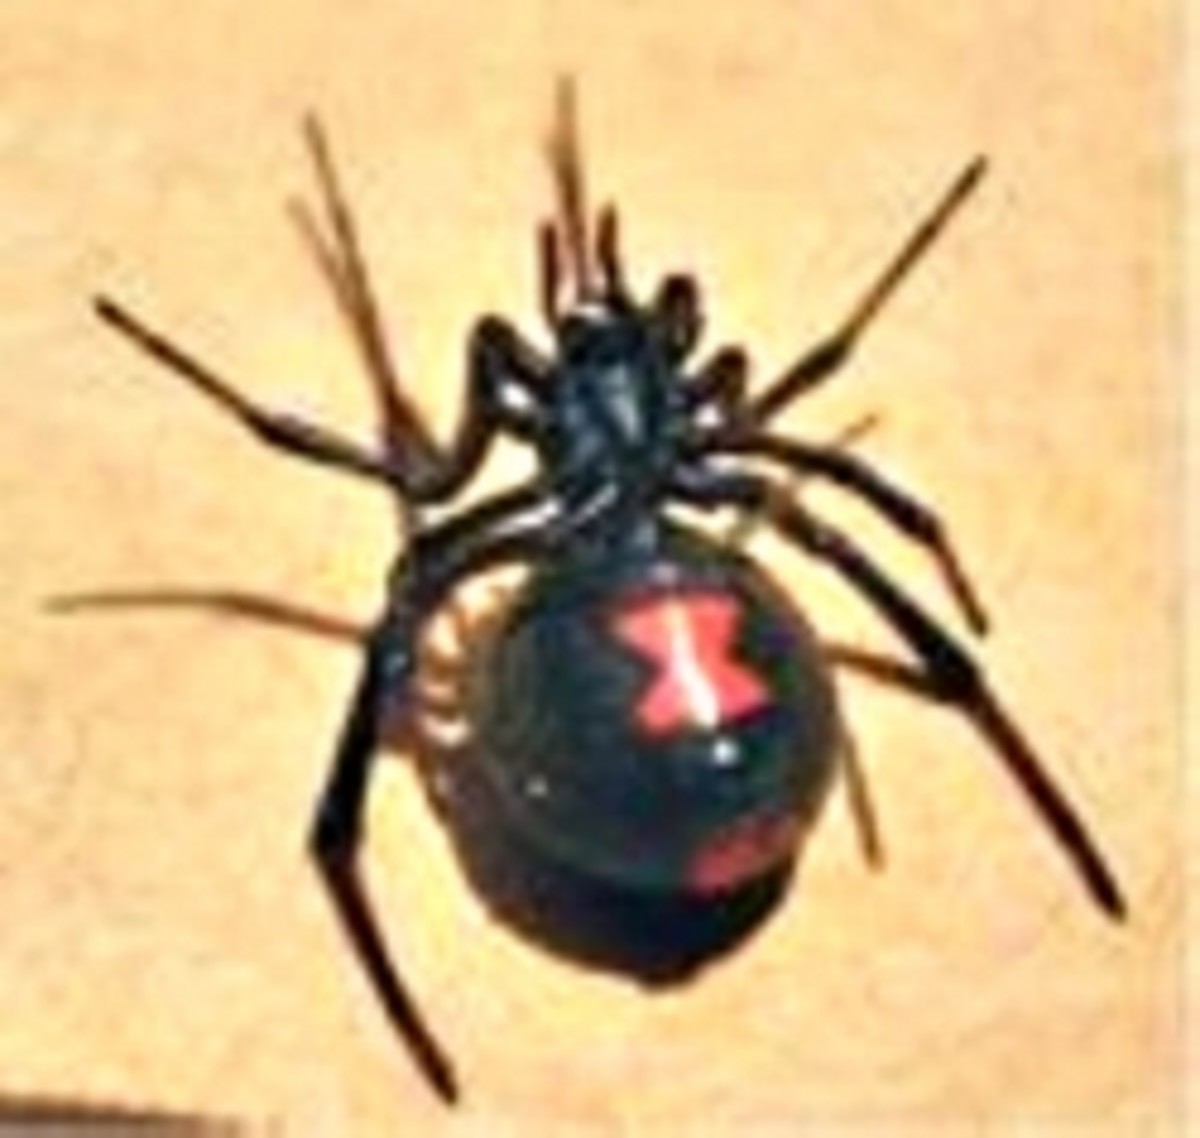 Black Widow Spider and Venom